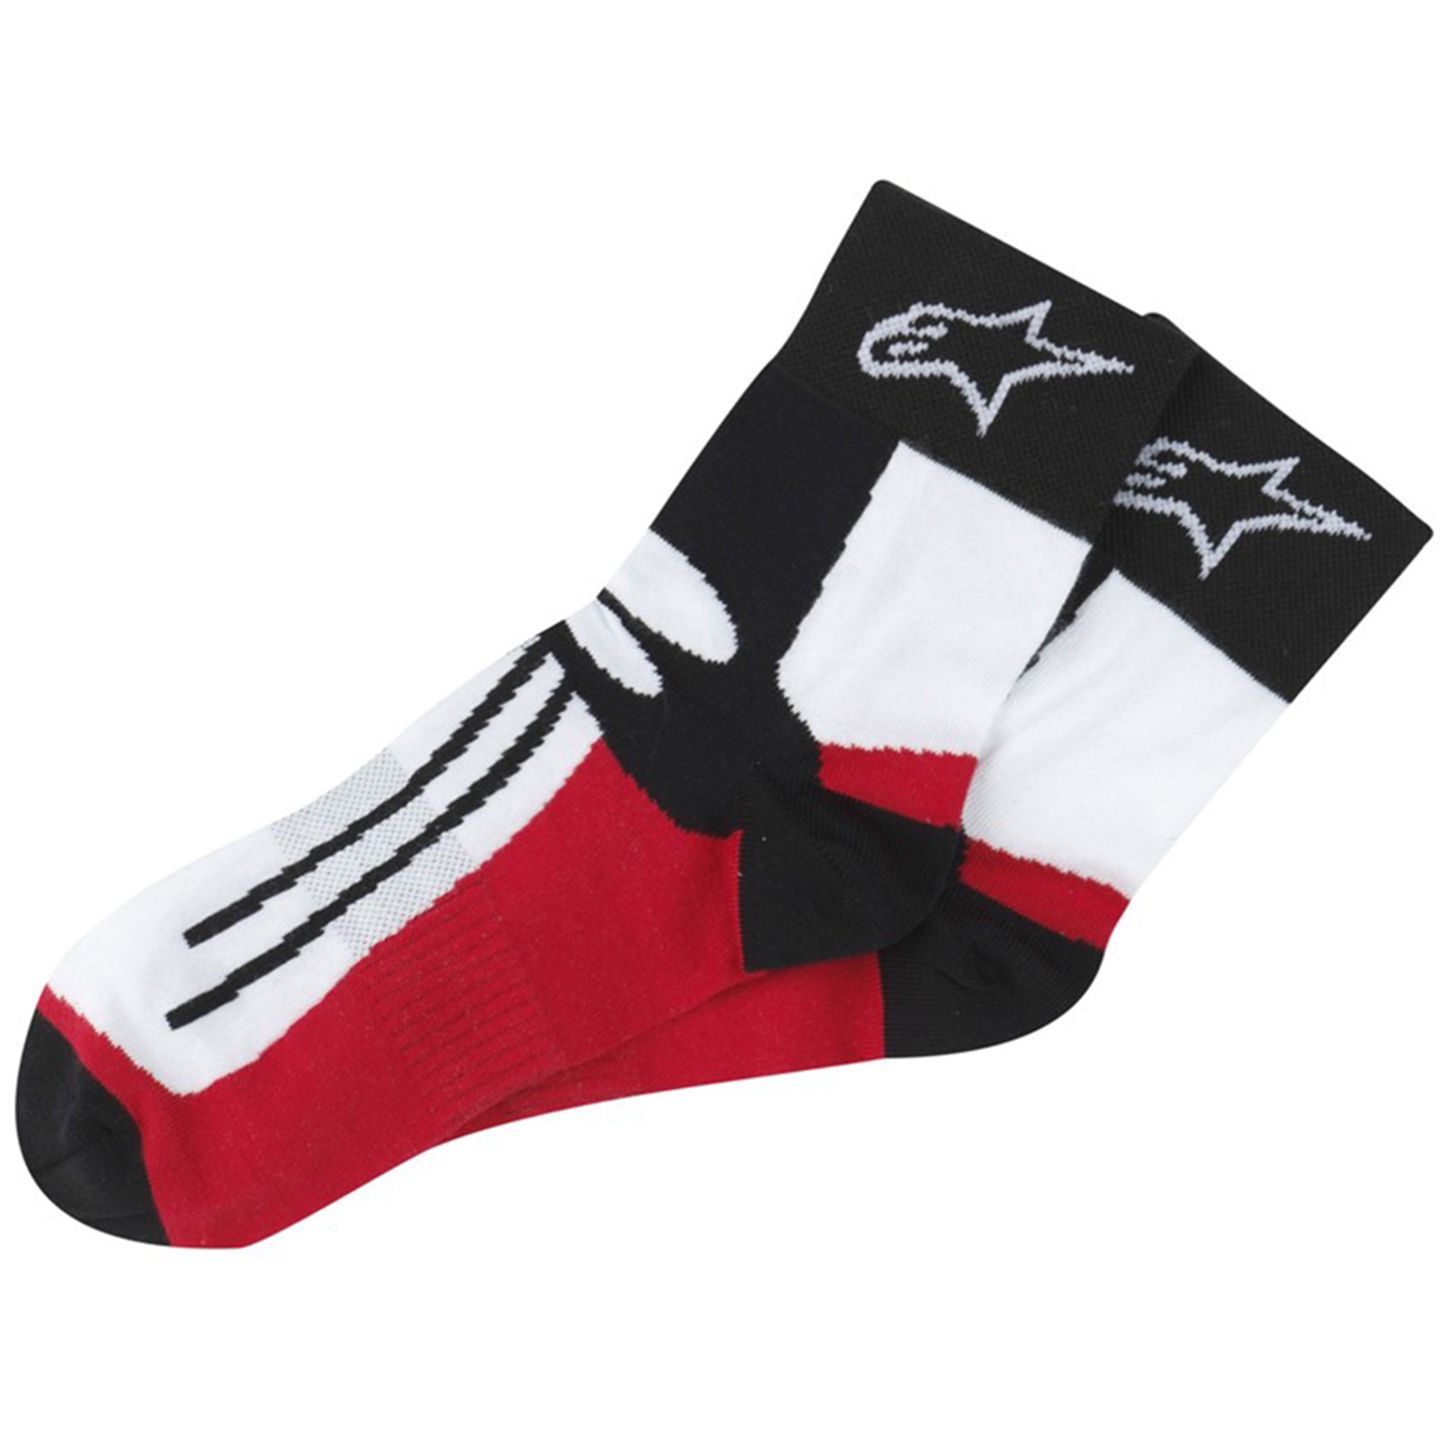 Alpinestars Racing Road Short Socks - Black/Red